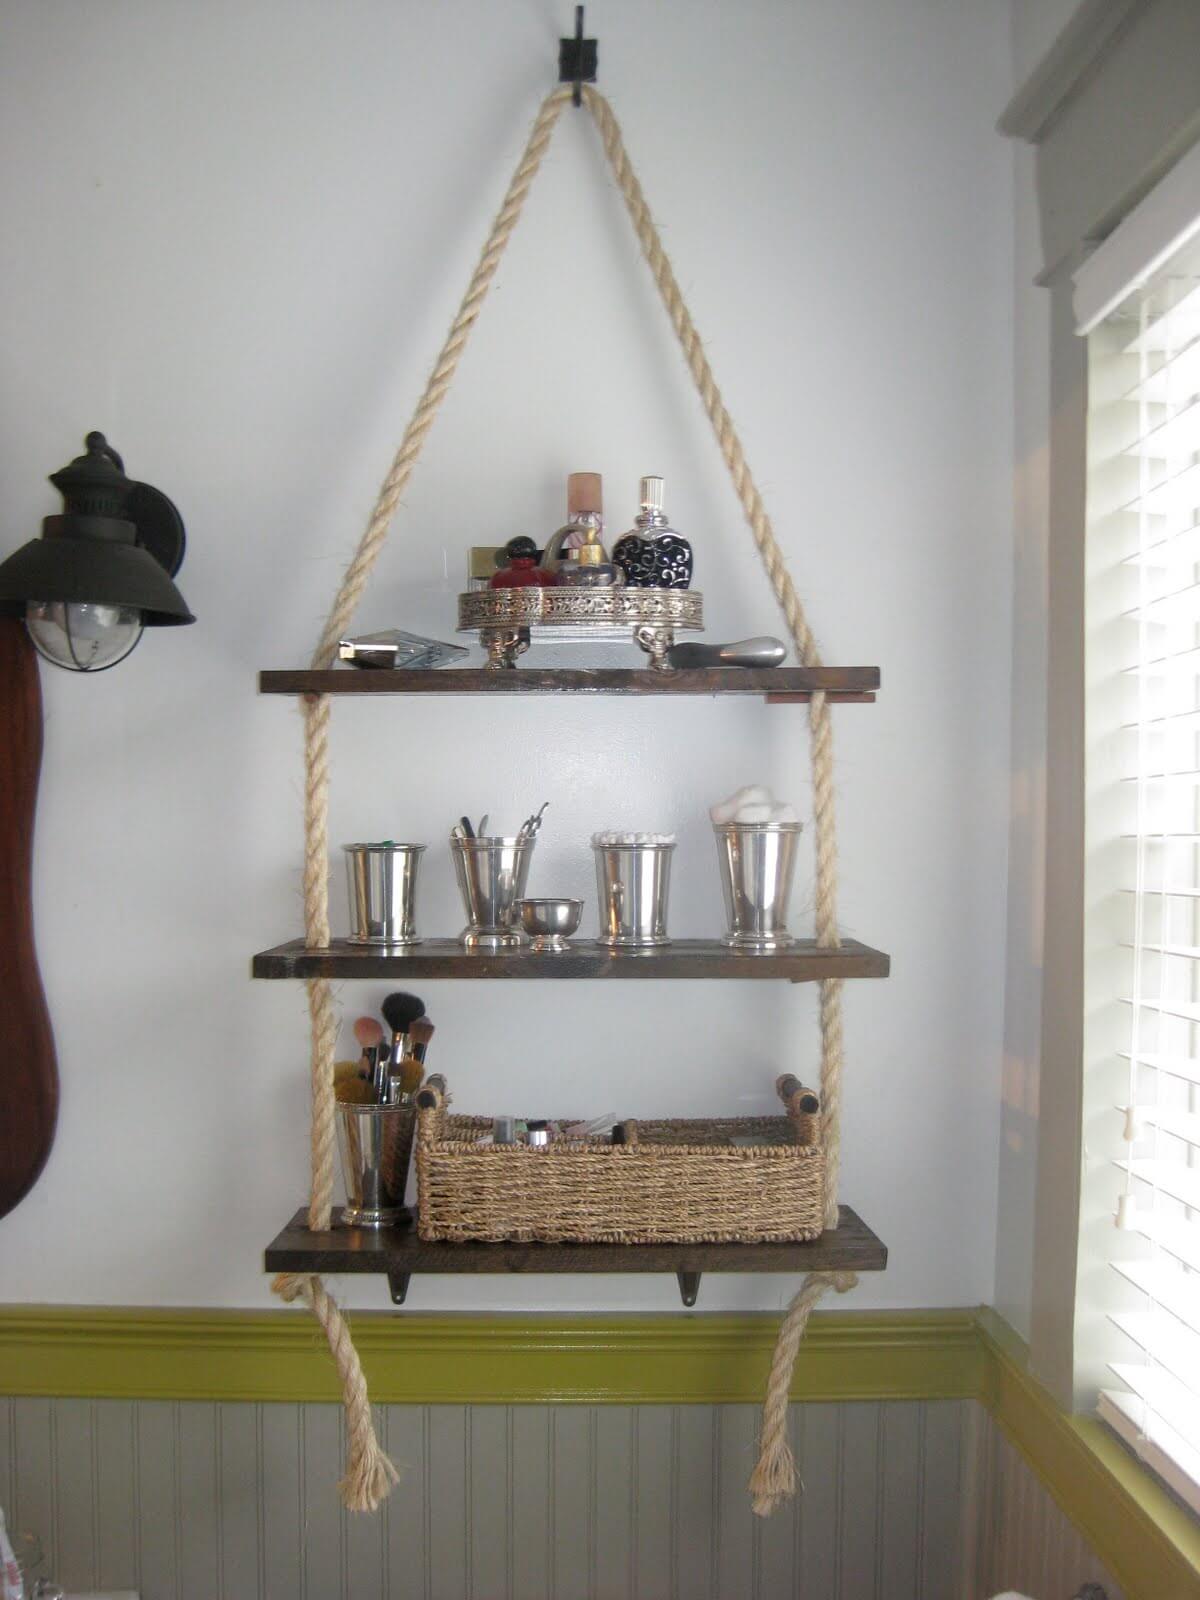 Rope Mounted Hanging DIY Bathroom Organizing Shelves